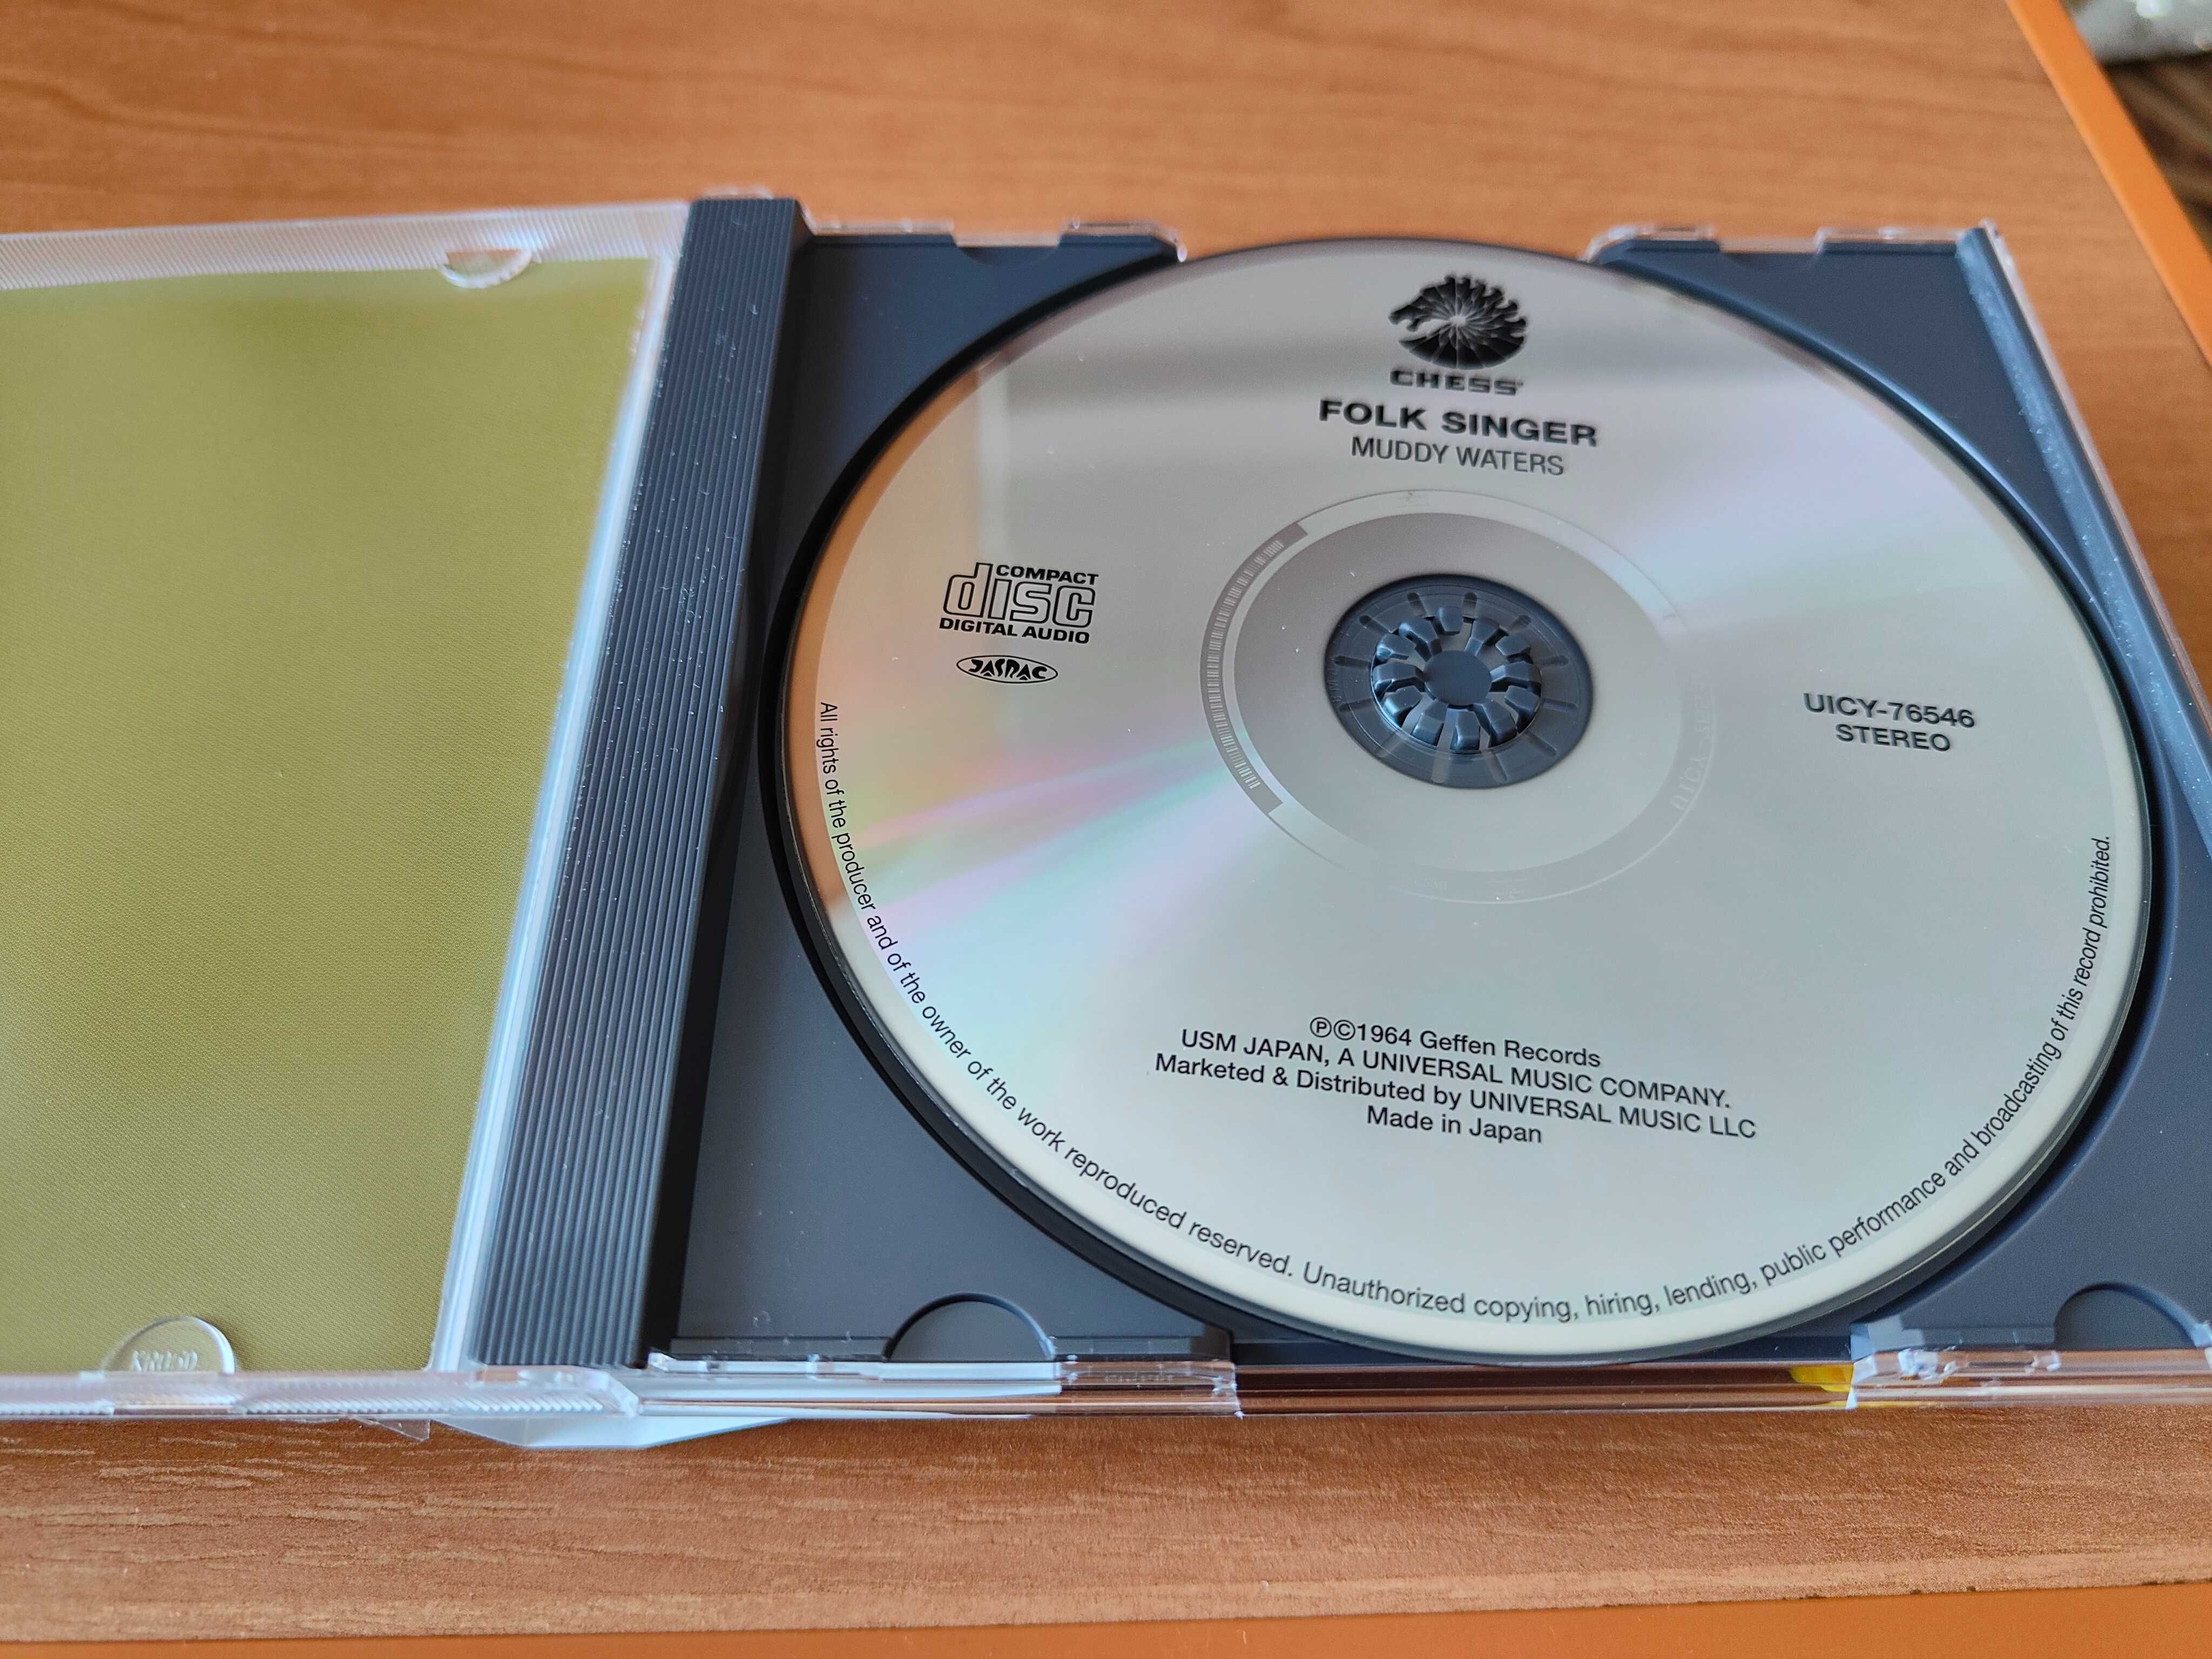 Płyta Muddy Waters folk singer CD wydanie Made in Japan